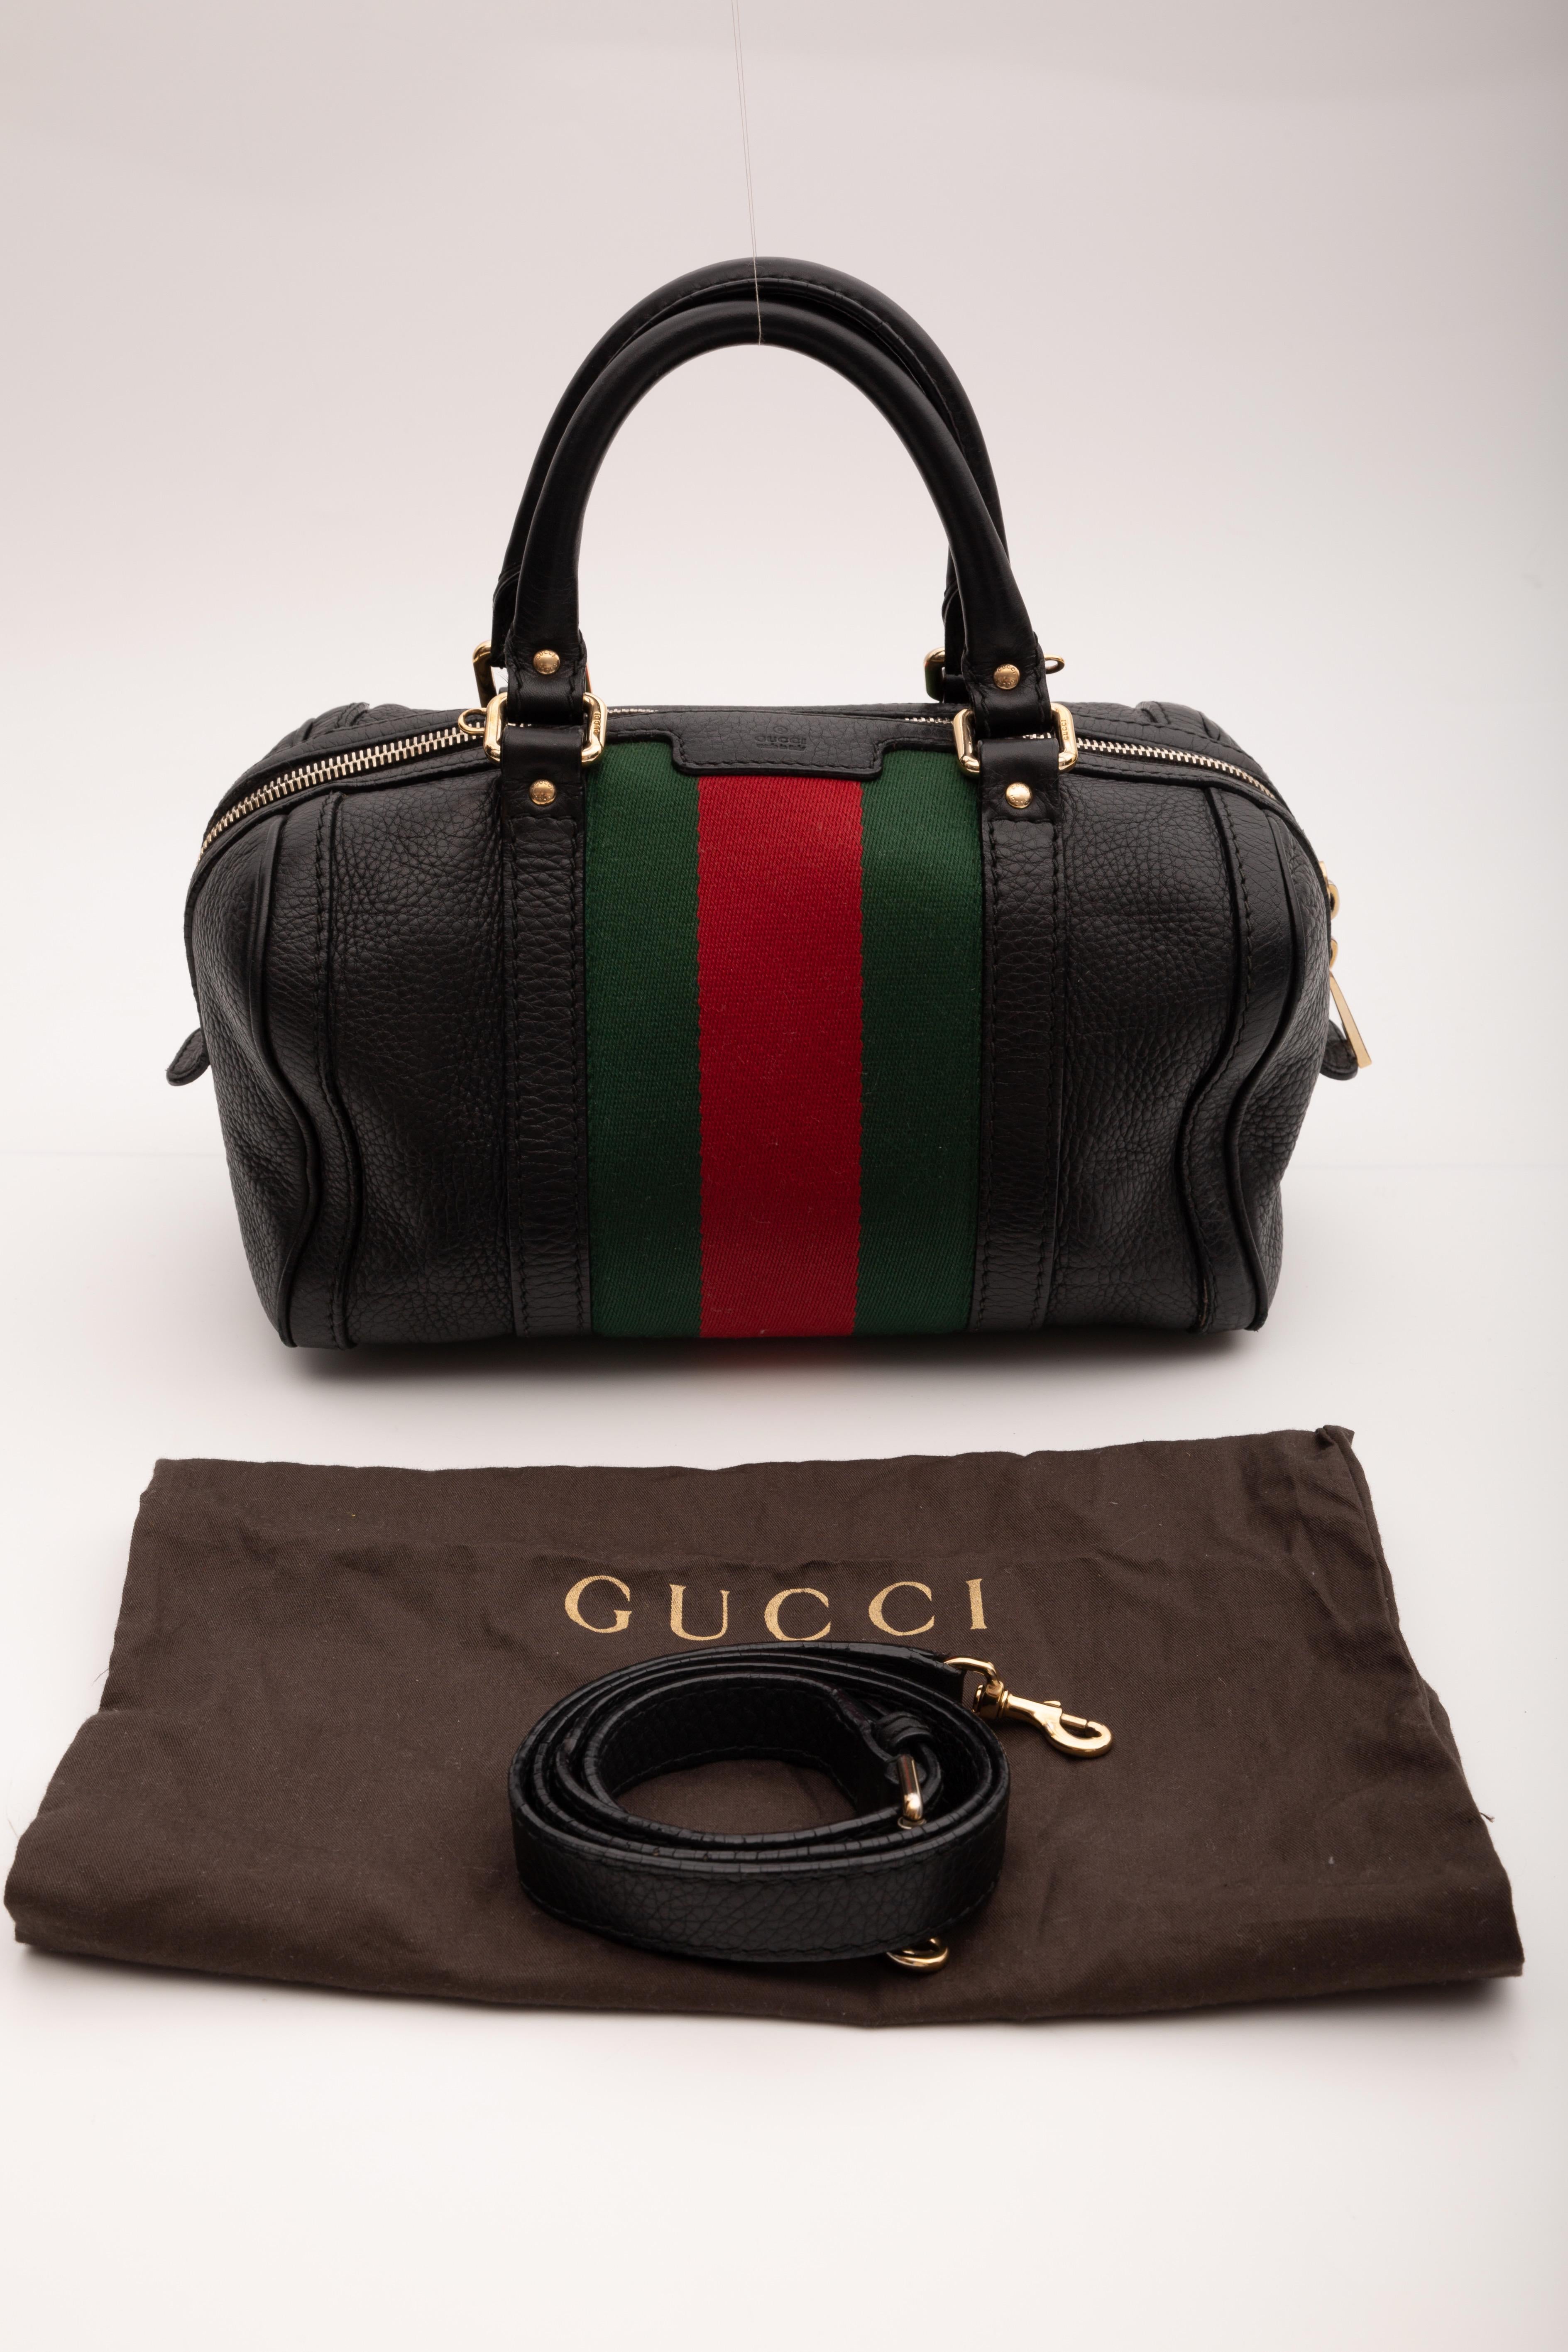 Gucci Calfskin Black Web Small Boston Handbag (269876) For Sale 4